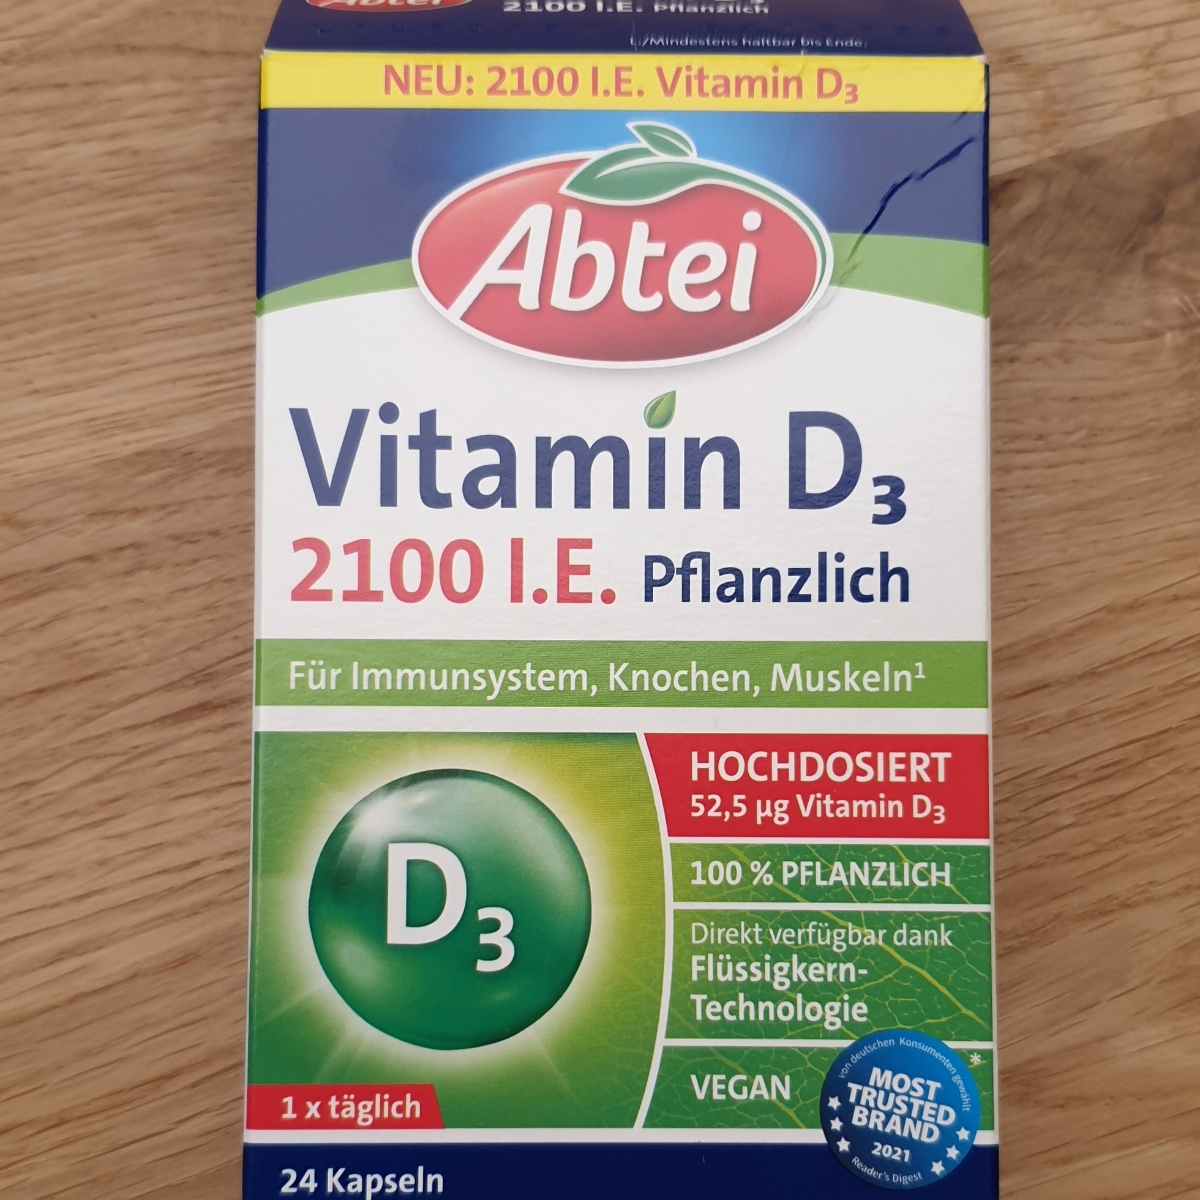 Abtei Vitamin D3 pflanzlich hochdosiert Reviews | abillion